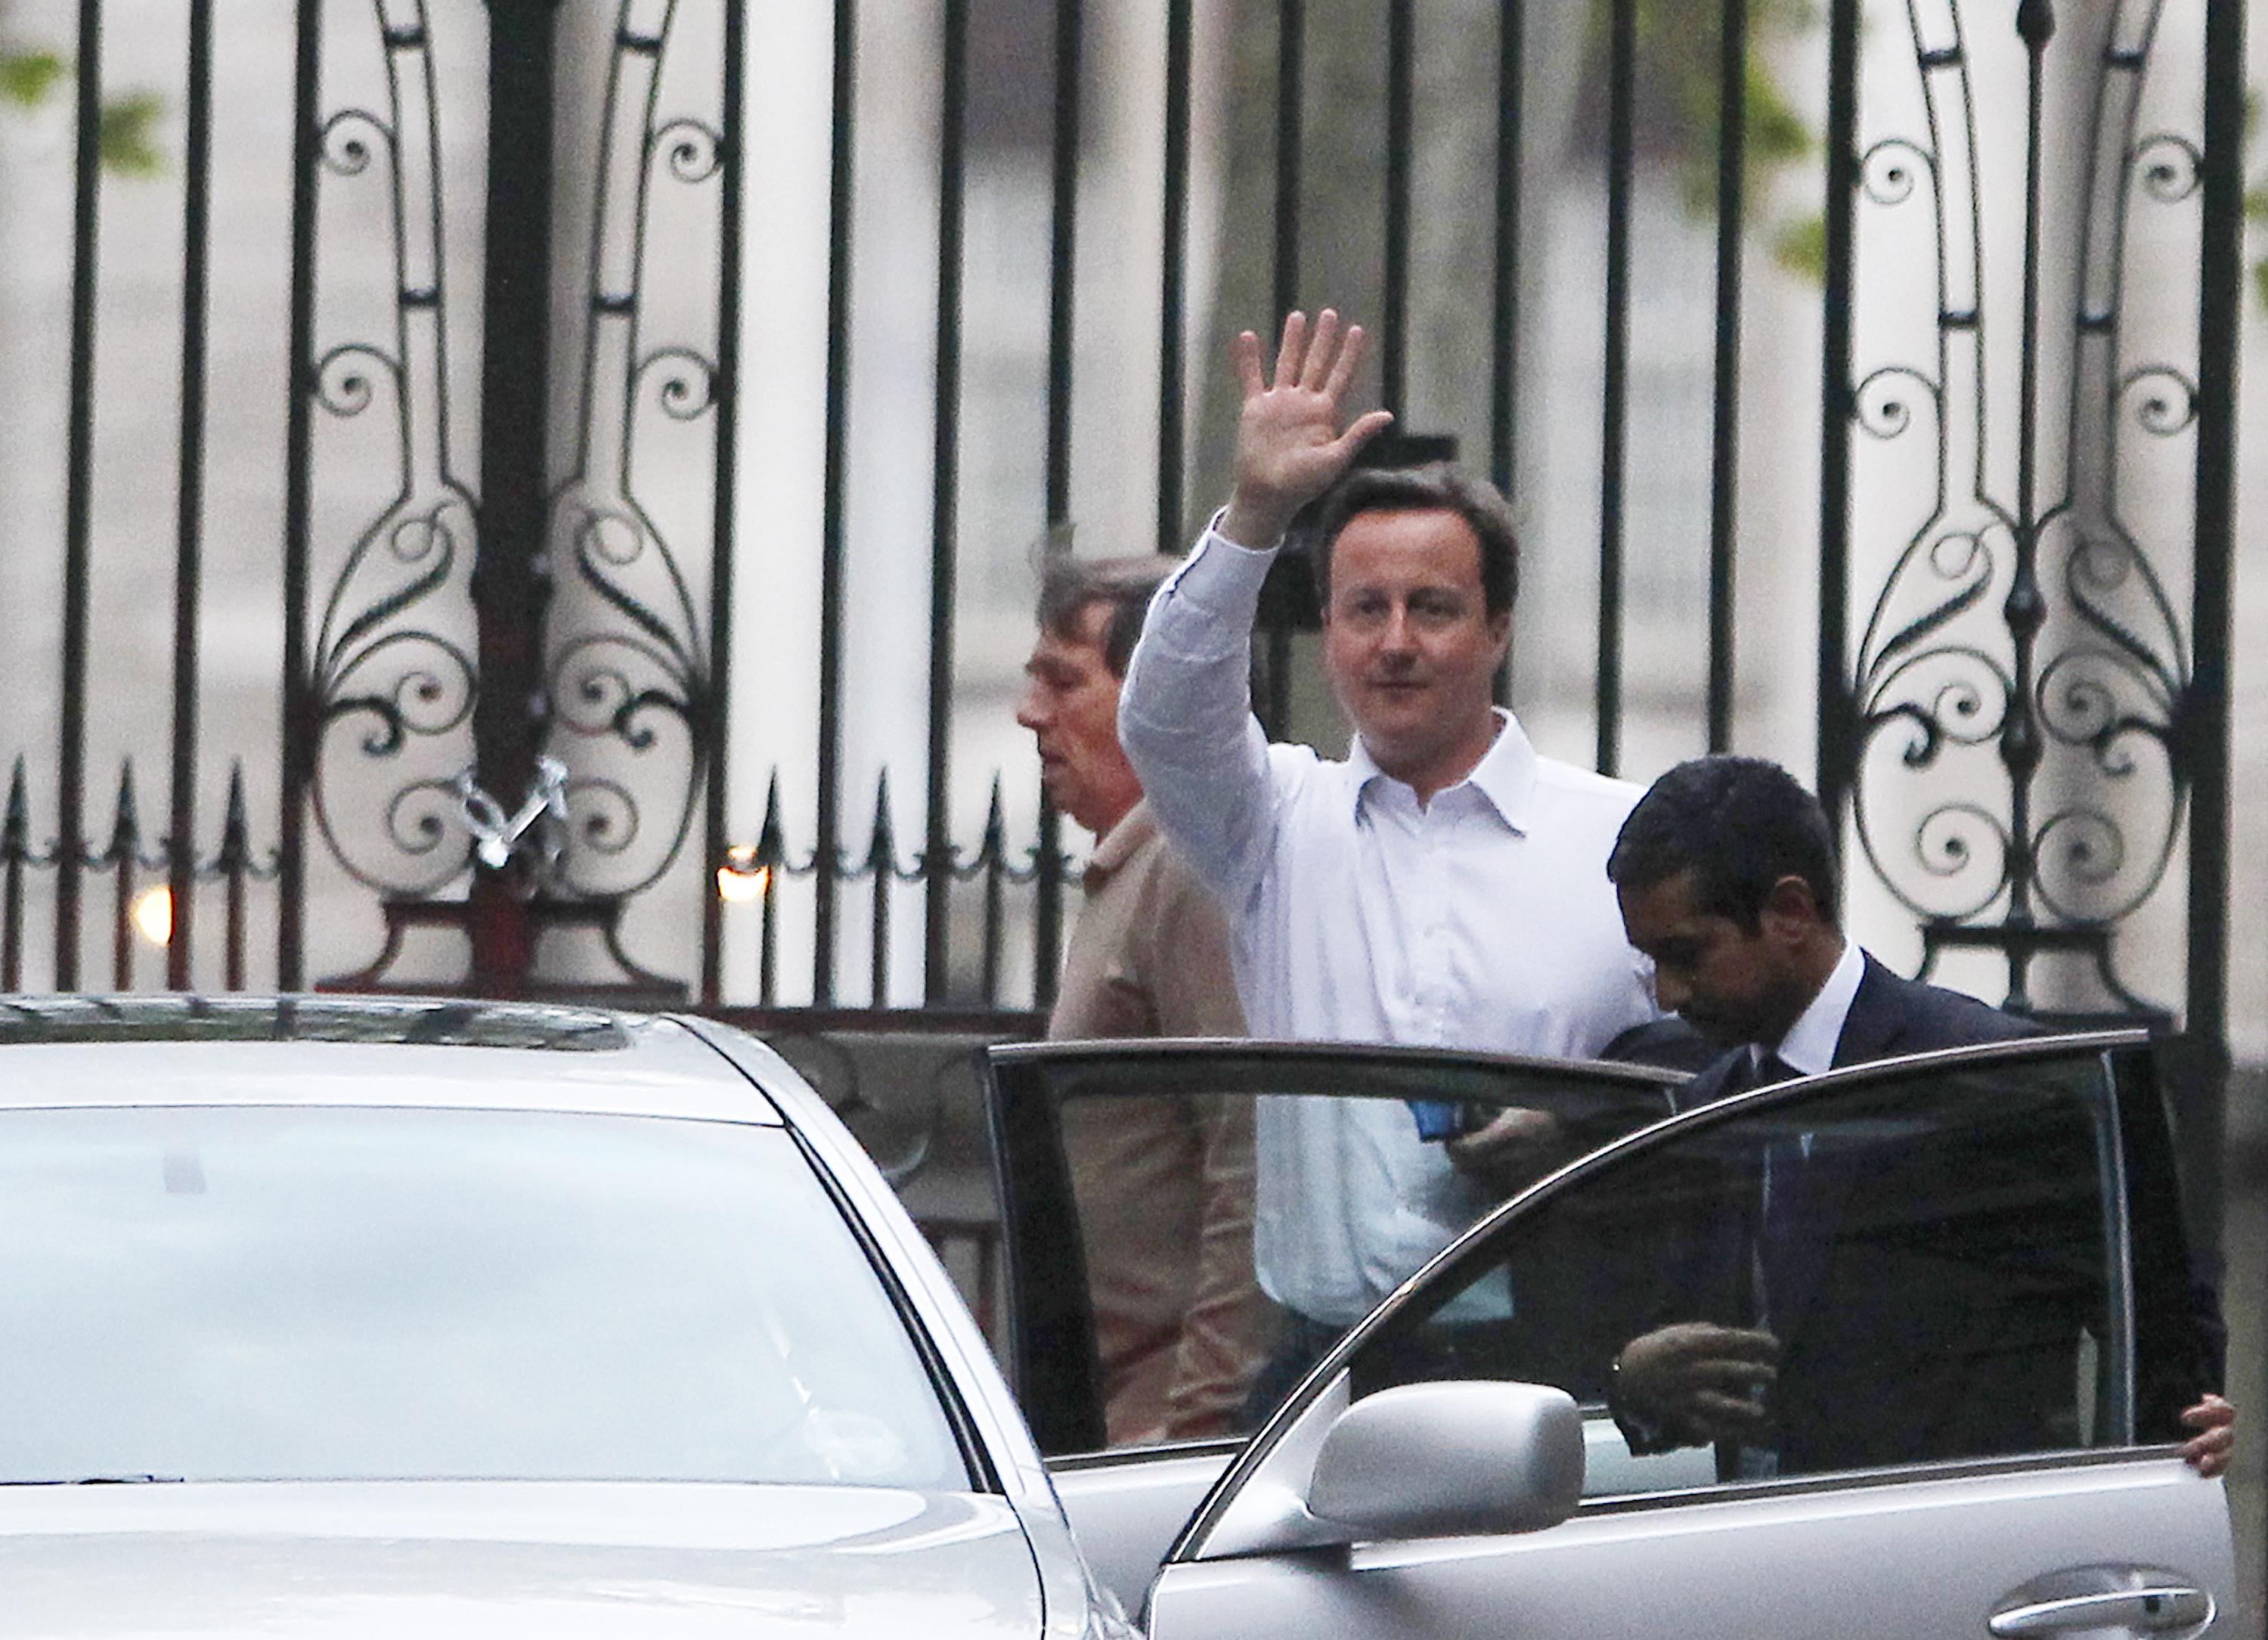 Ο Ντέιβιντ Κάμερος ακόμη περιμένει να δει αν θα είναι ο επόμενος πρωθυπουργός της Βρετανίας. ΦΩΤΟ REUTERS